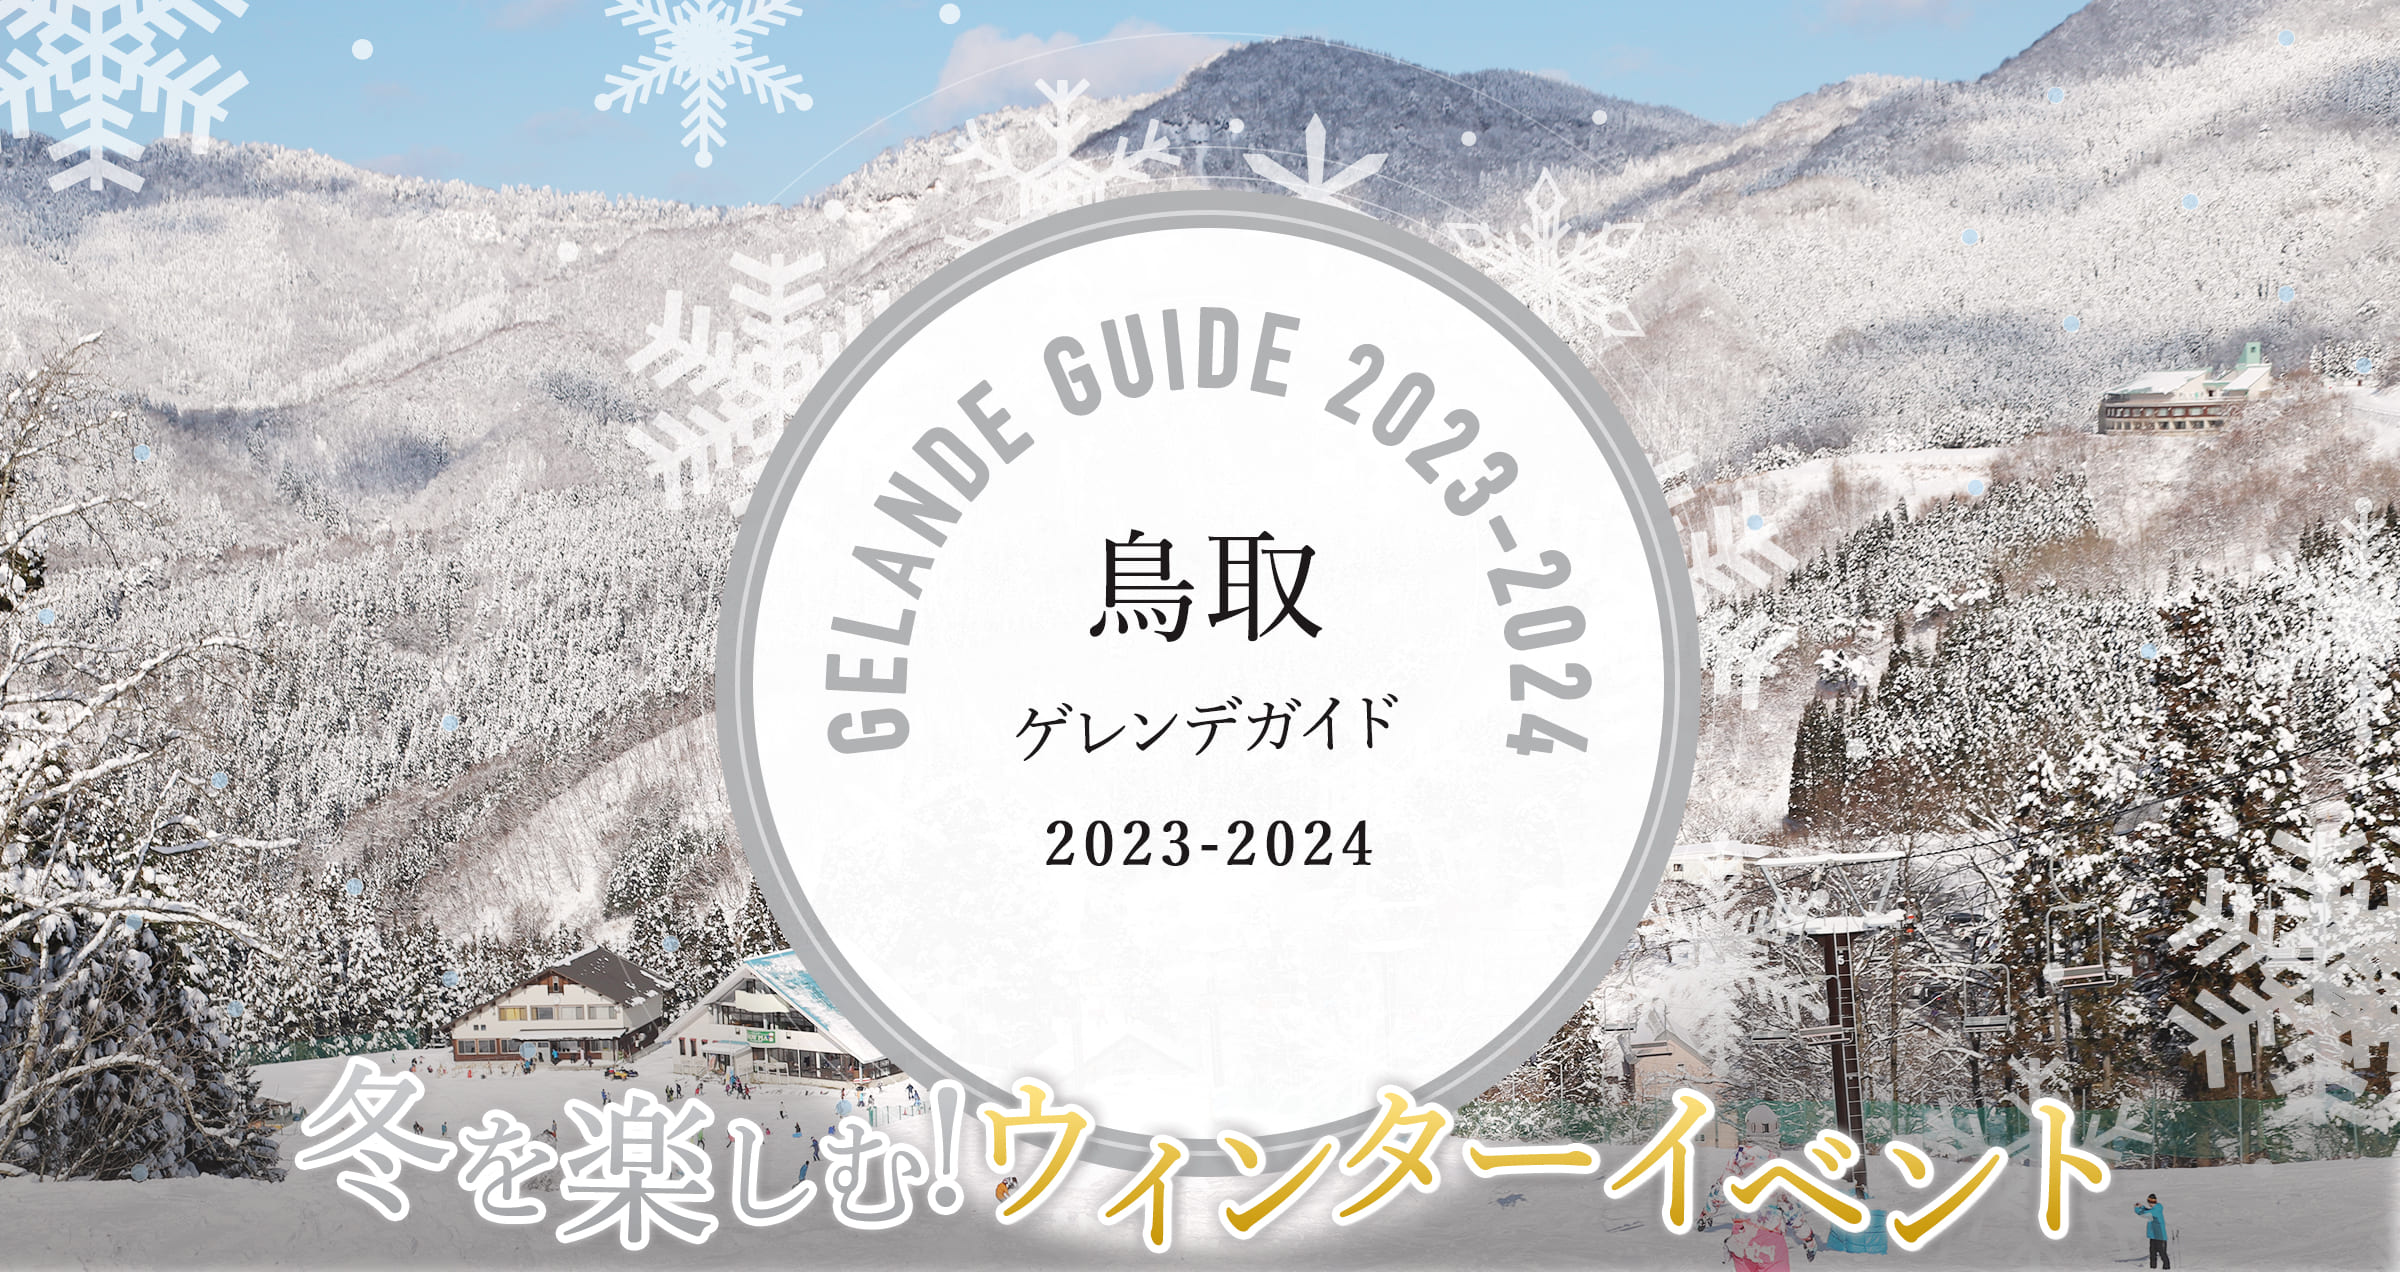 鳥取 イルミネーション & ゲレンデ ガイド 2019 冬を楽しむ!ウィンターイベント